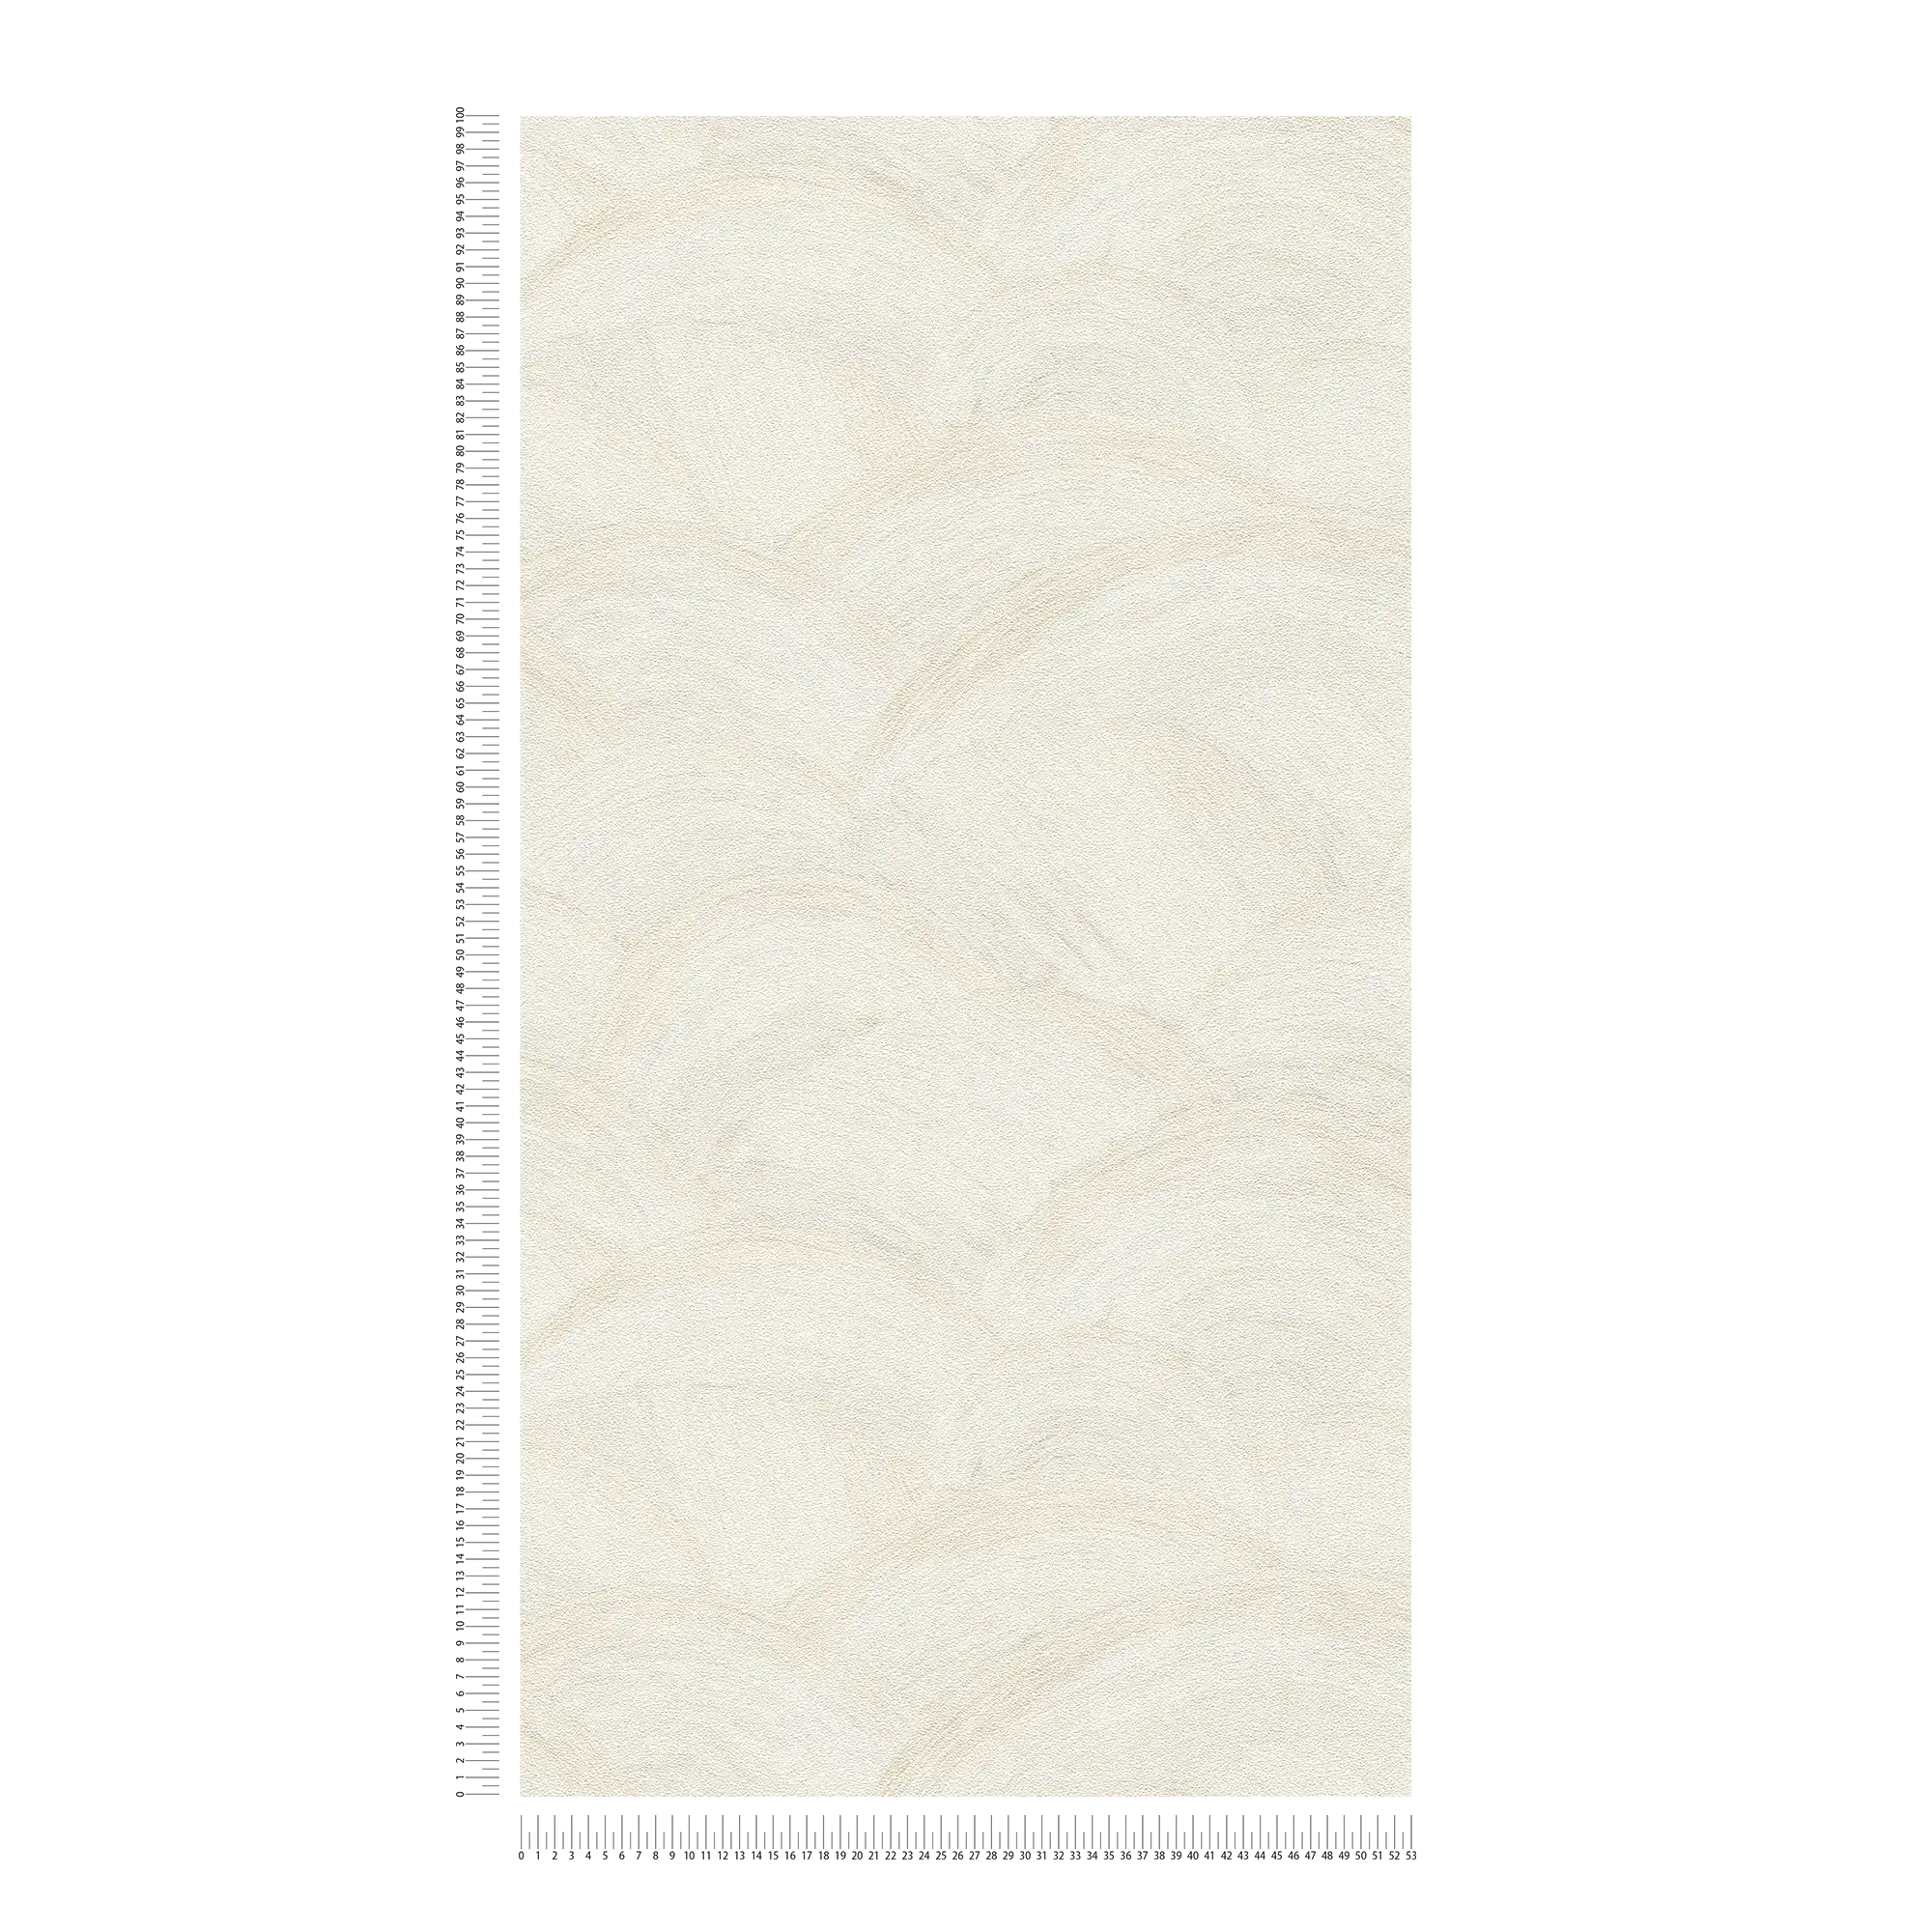             Vliesbehang met subtiel golfpatroon - wit, crème, grijs
        